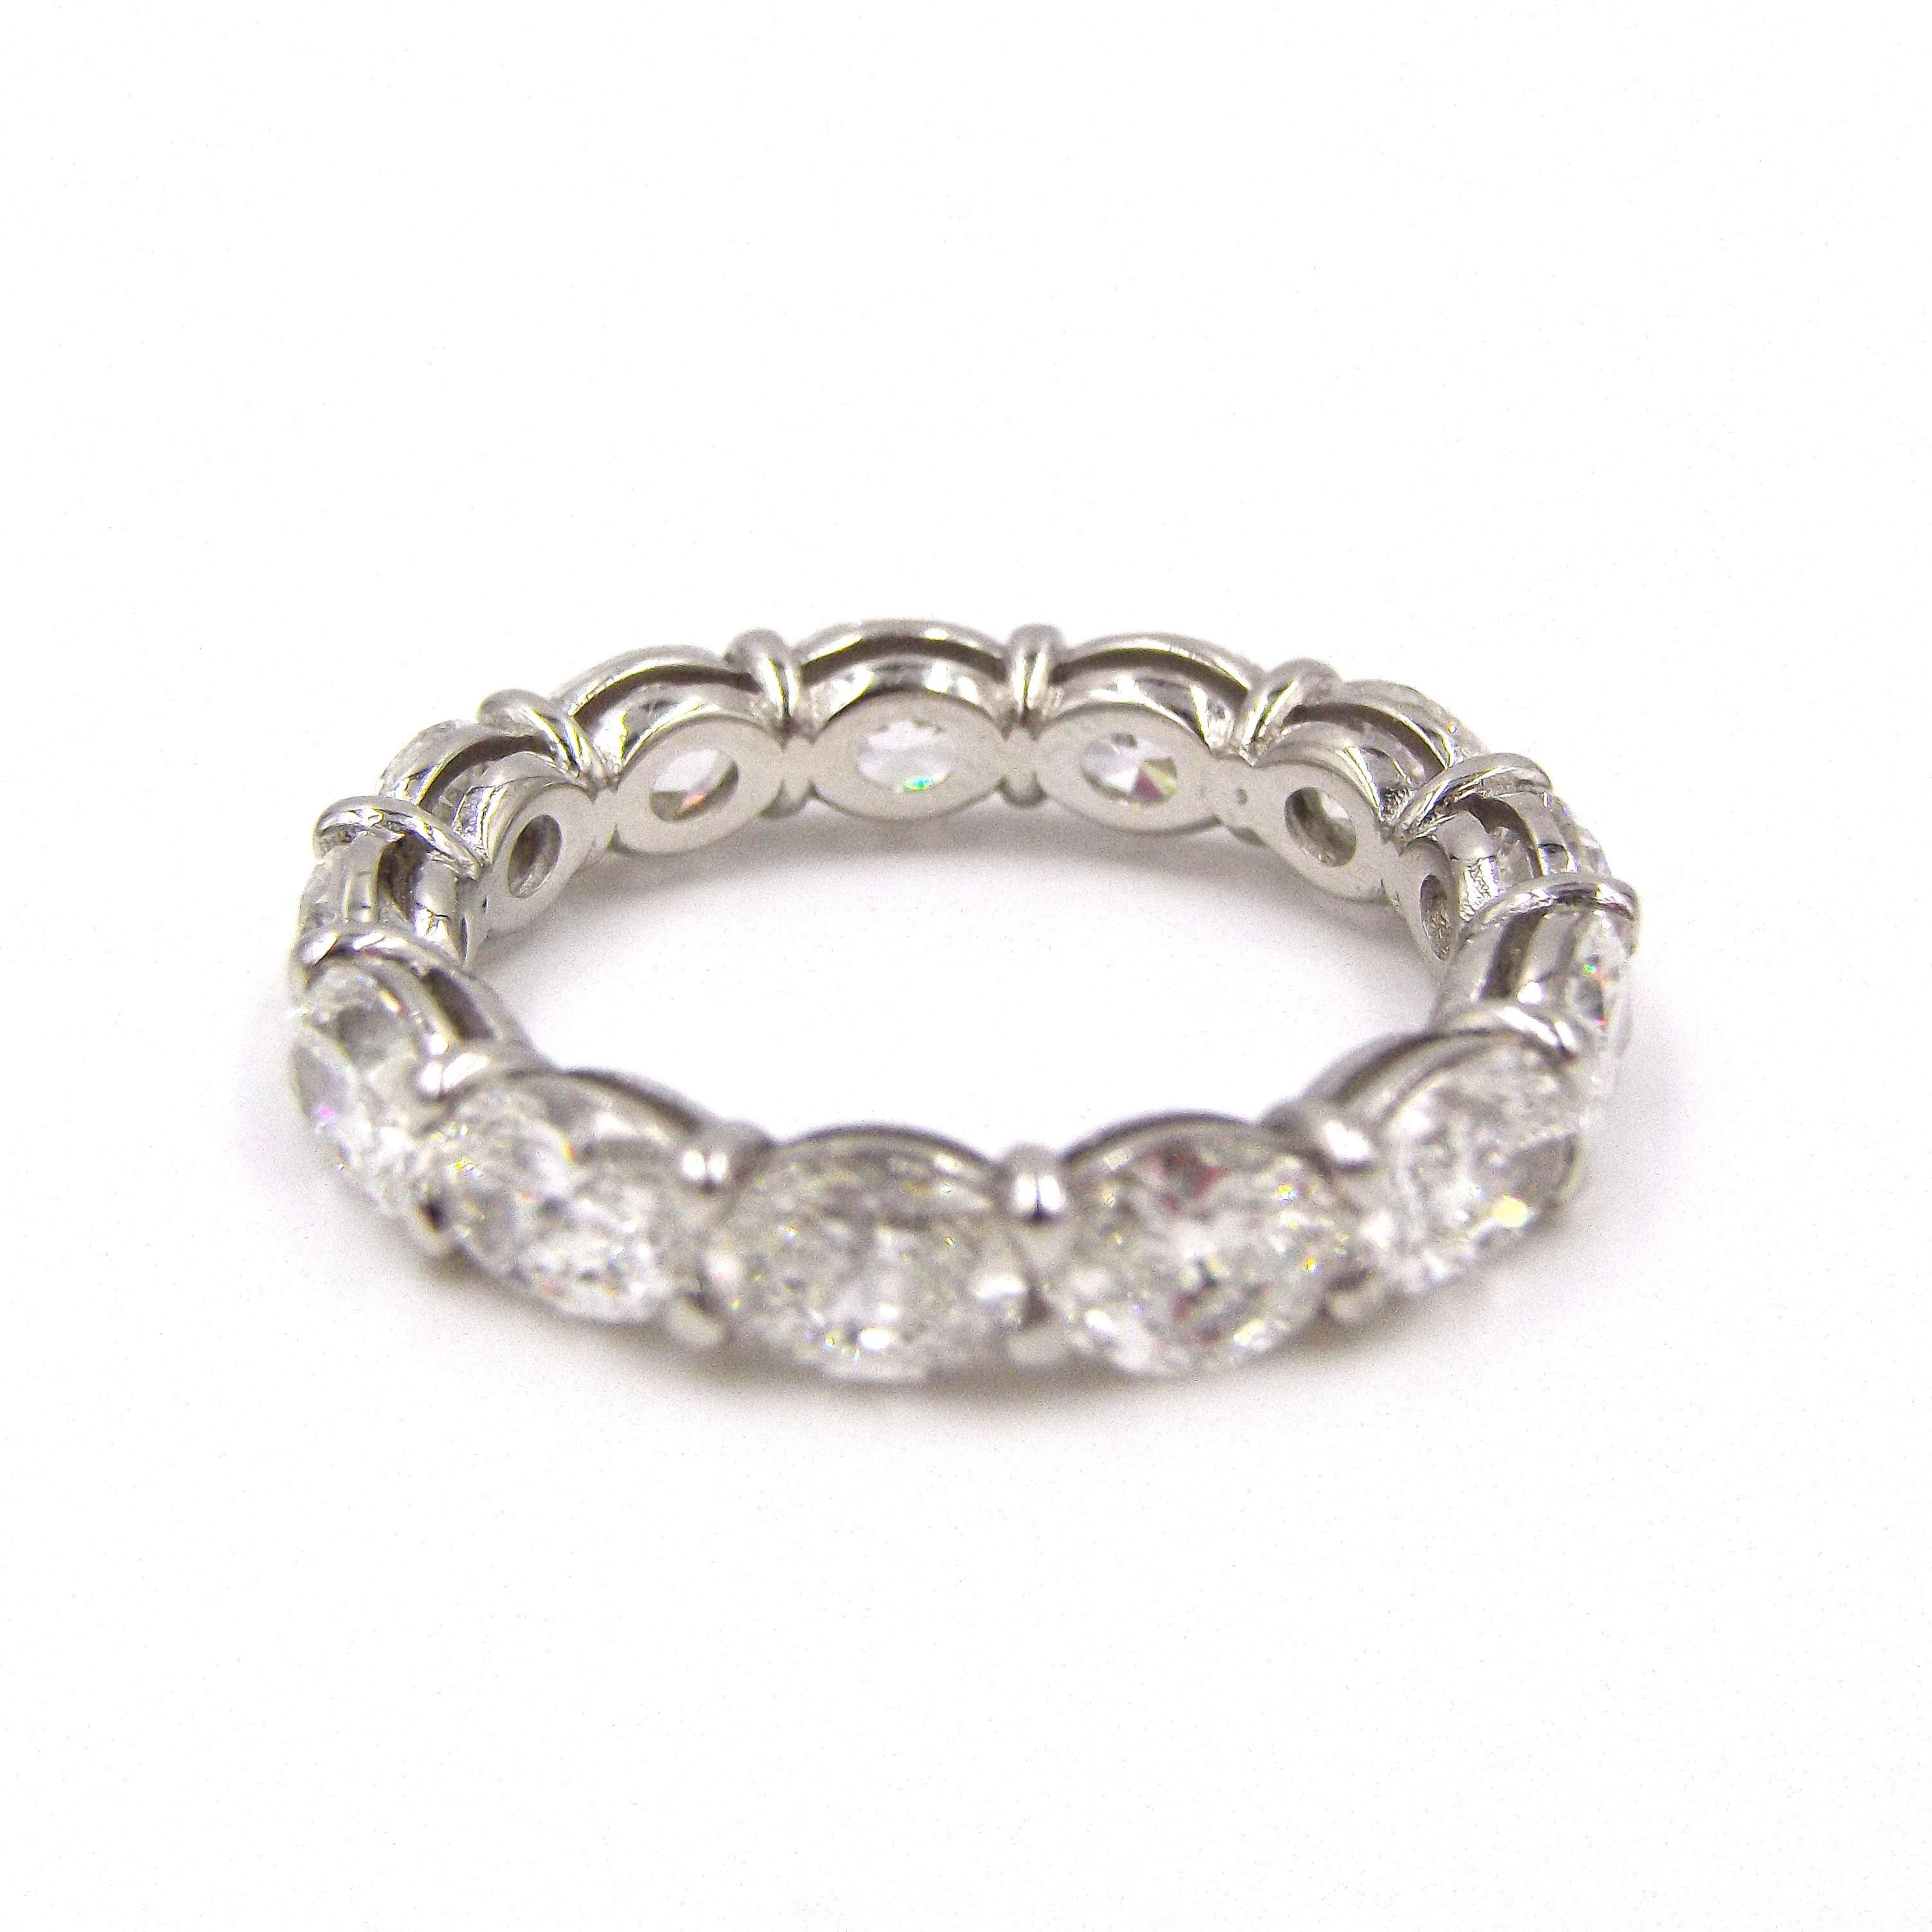 Metall: Platin (getestet, keine Punzierungen)
Diamanten: 13 ovale Steine mit einem Gesamtgewicht von 4 Karat
Farbe: F-G
Klarheit: VS-VVS
Größe: 6.5 US